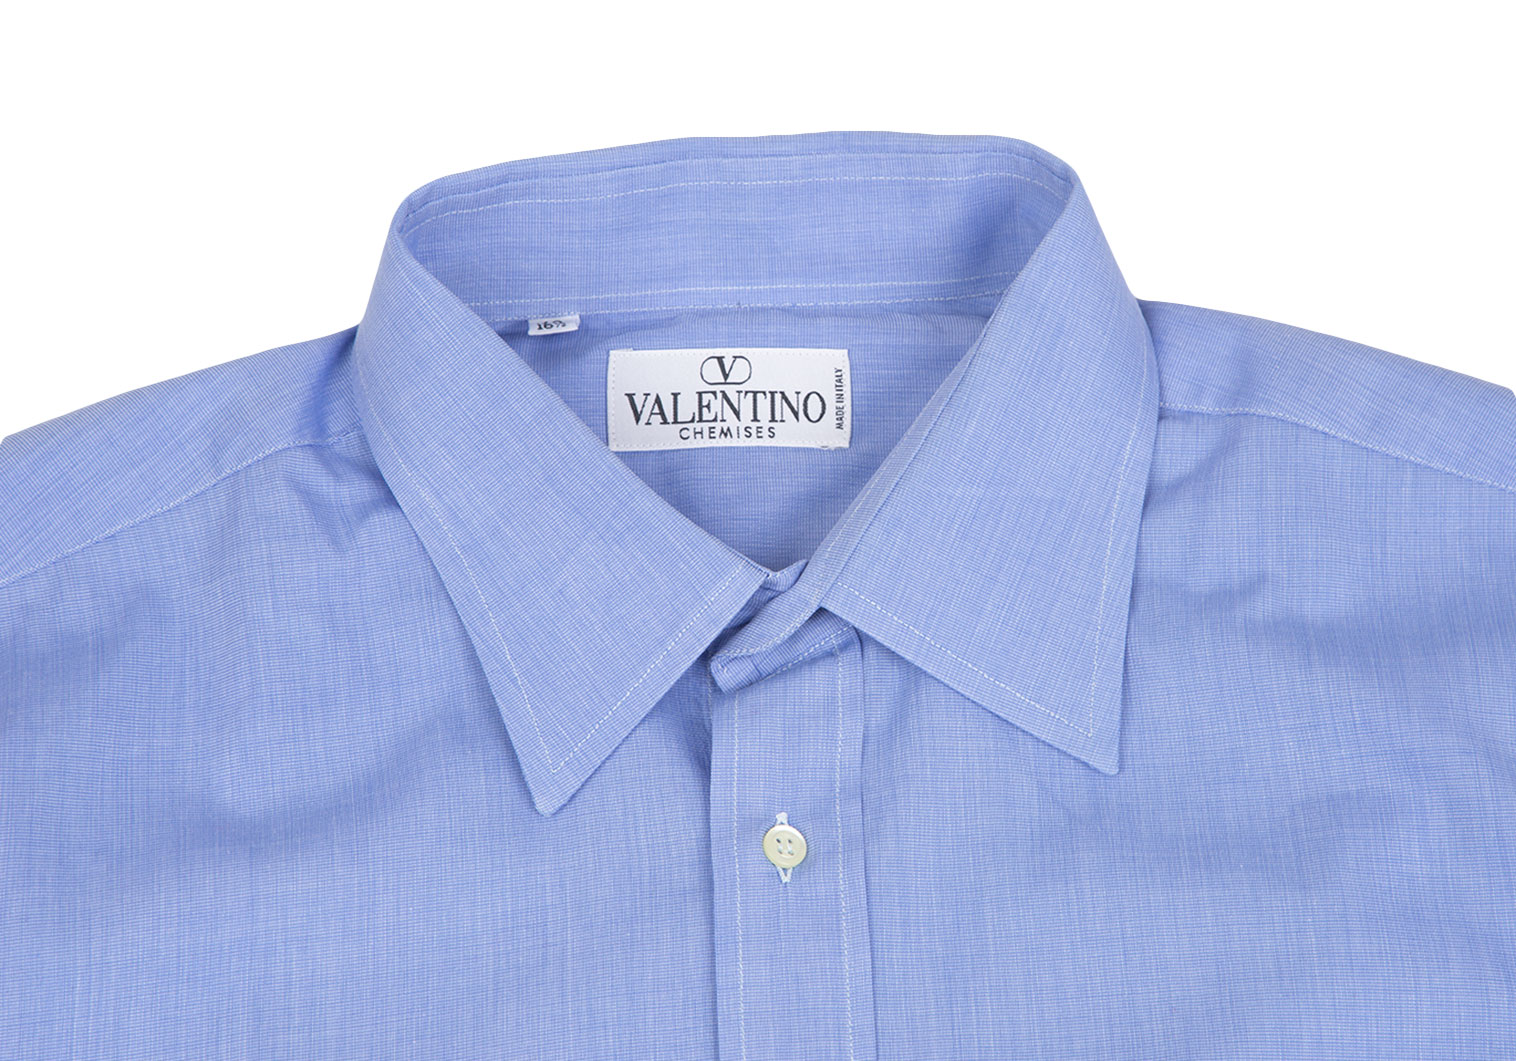 ヴァレンティノVALENTINO ワンポイントロゴ刺繍シャツ サックスブルー42